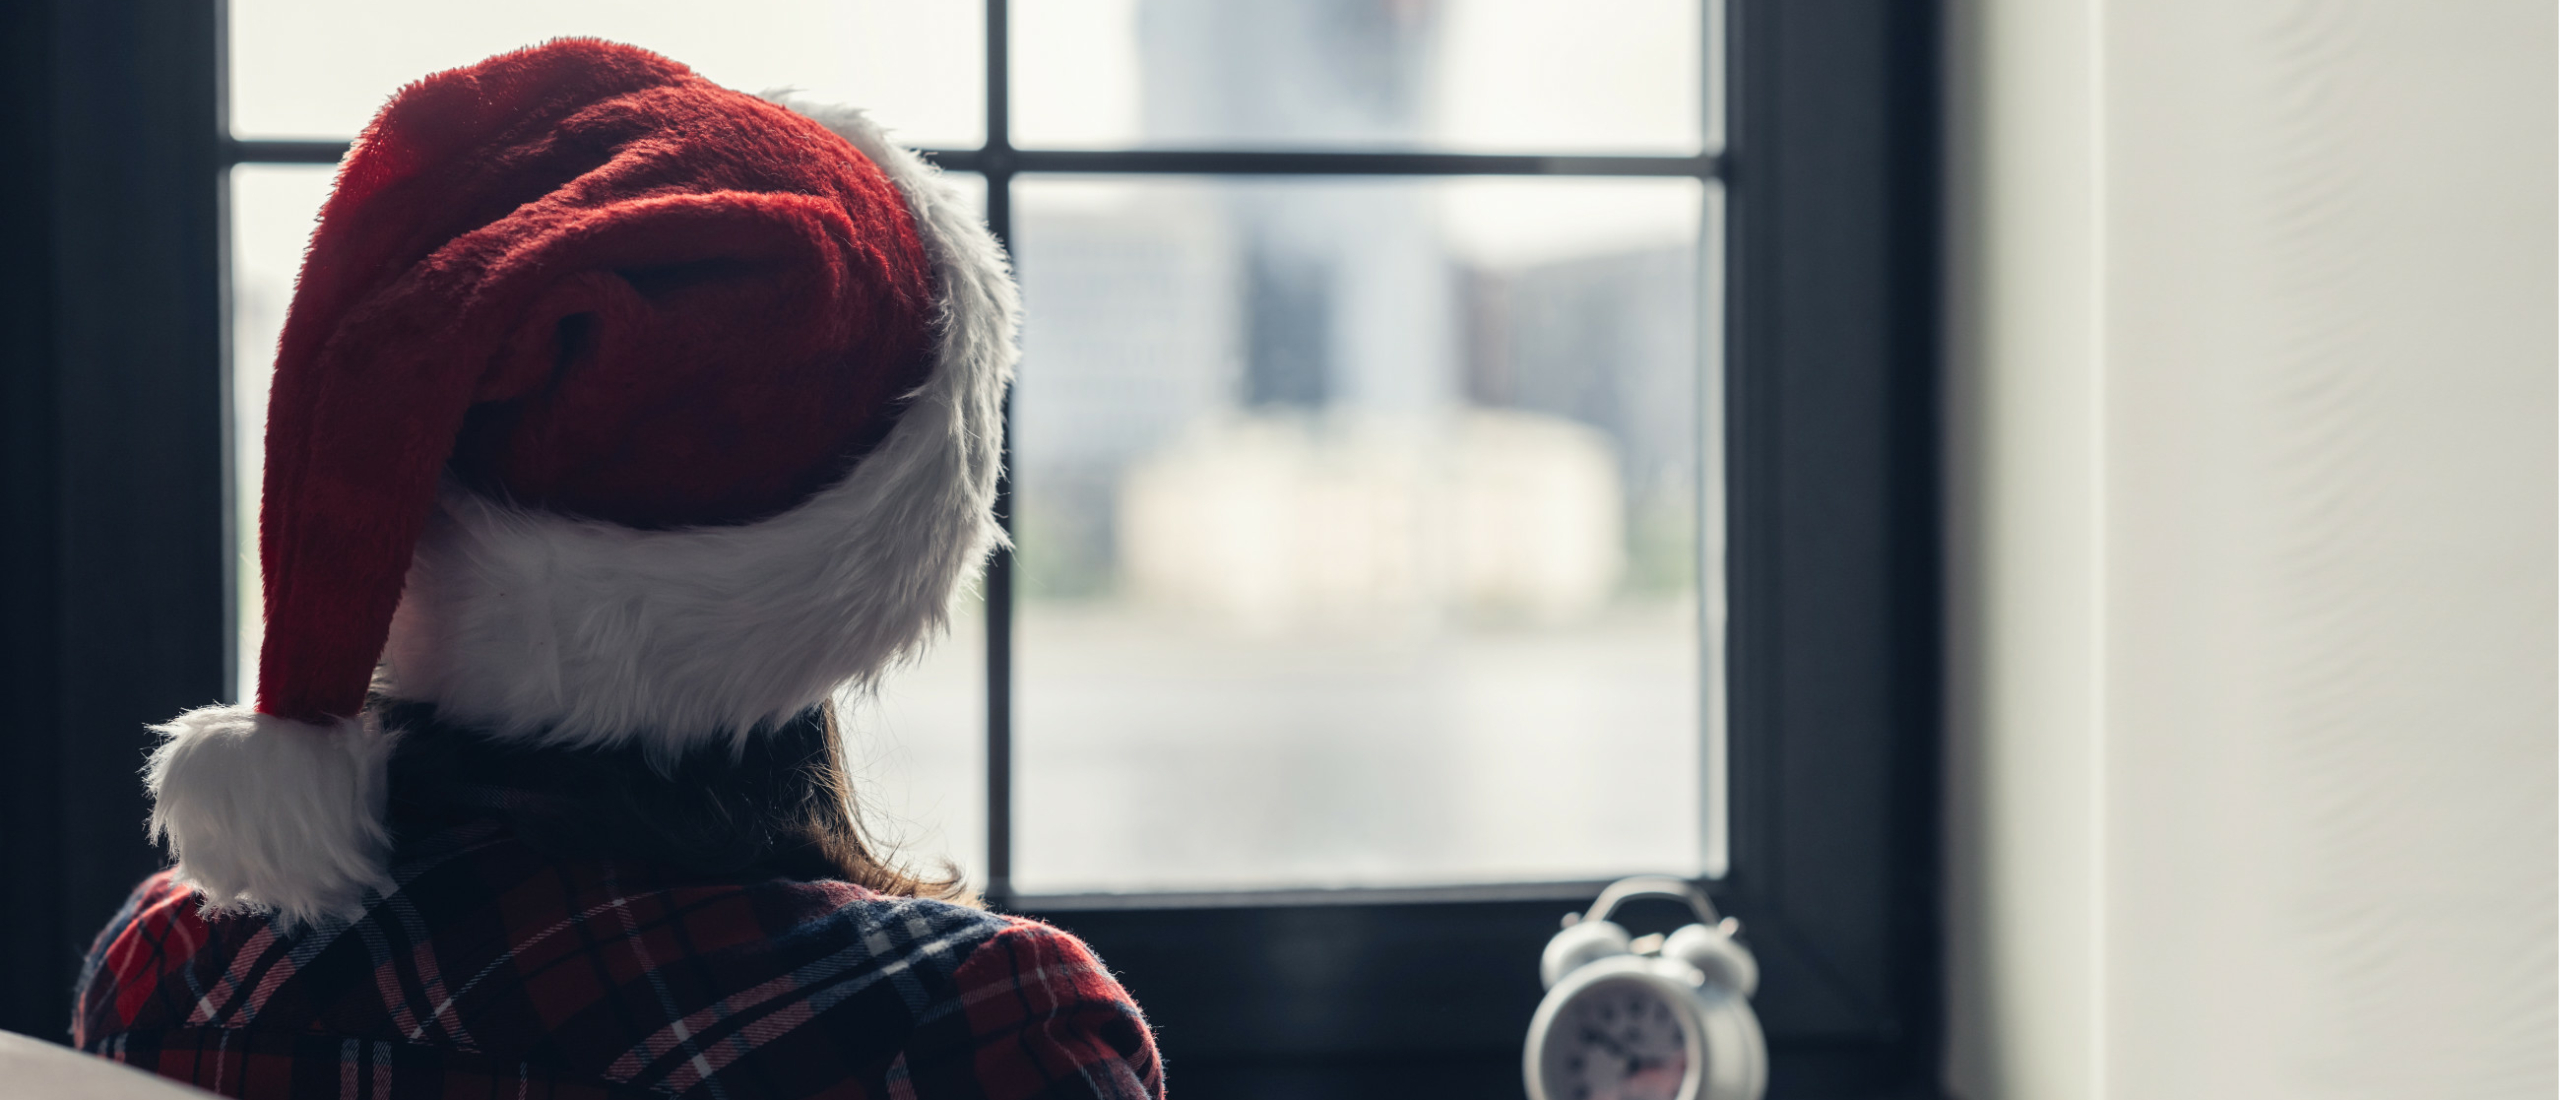 Eerlijk verhaal: Eenzaam met kerst